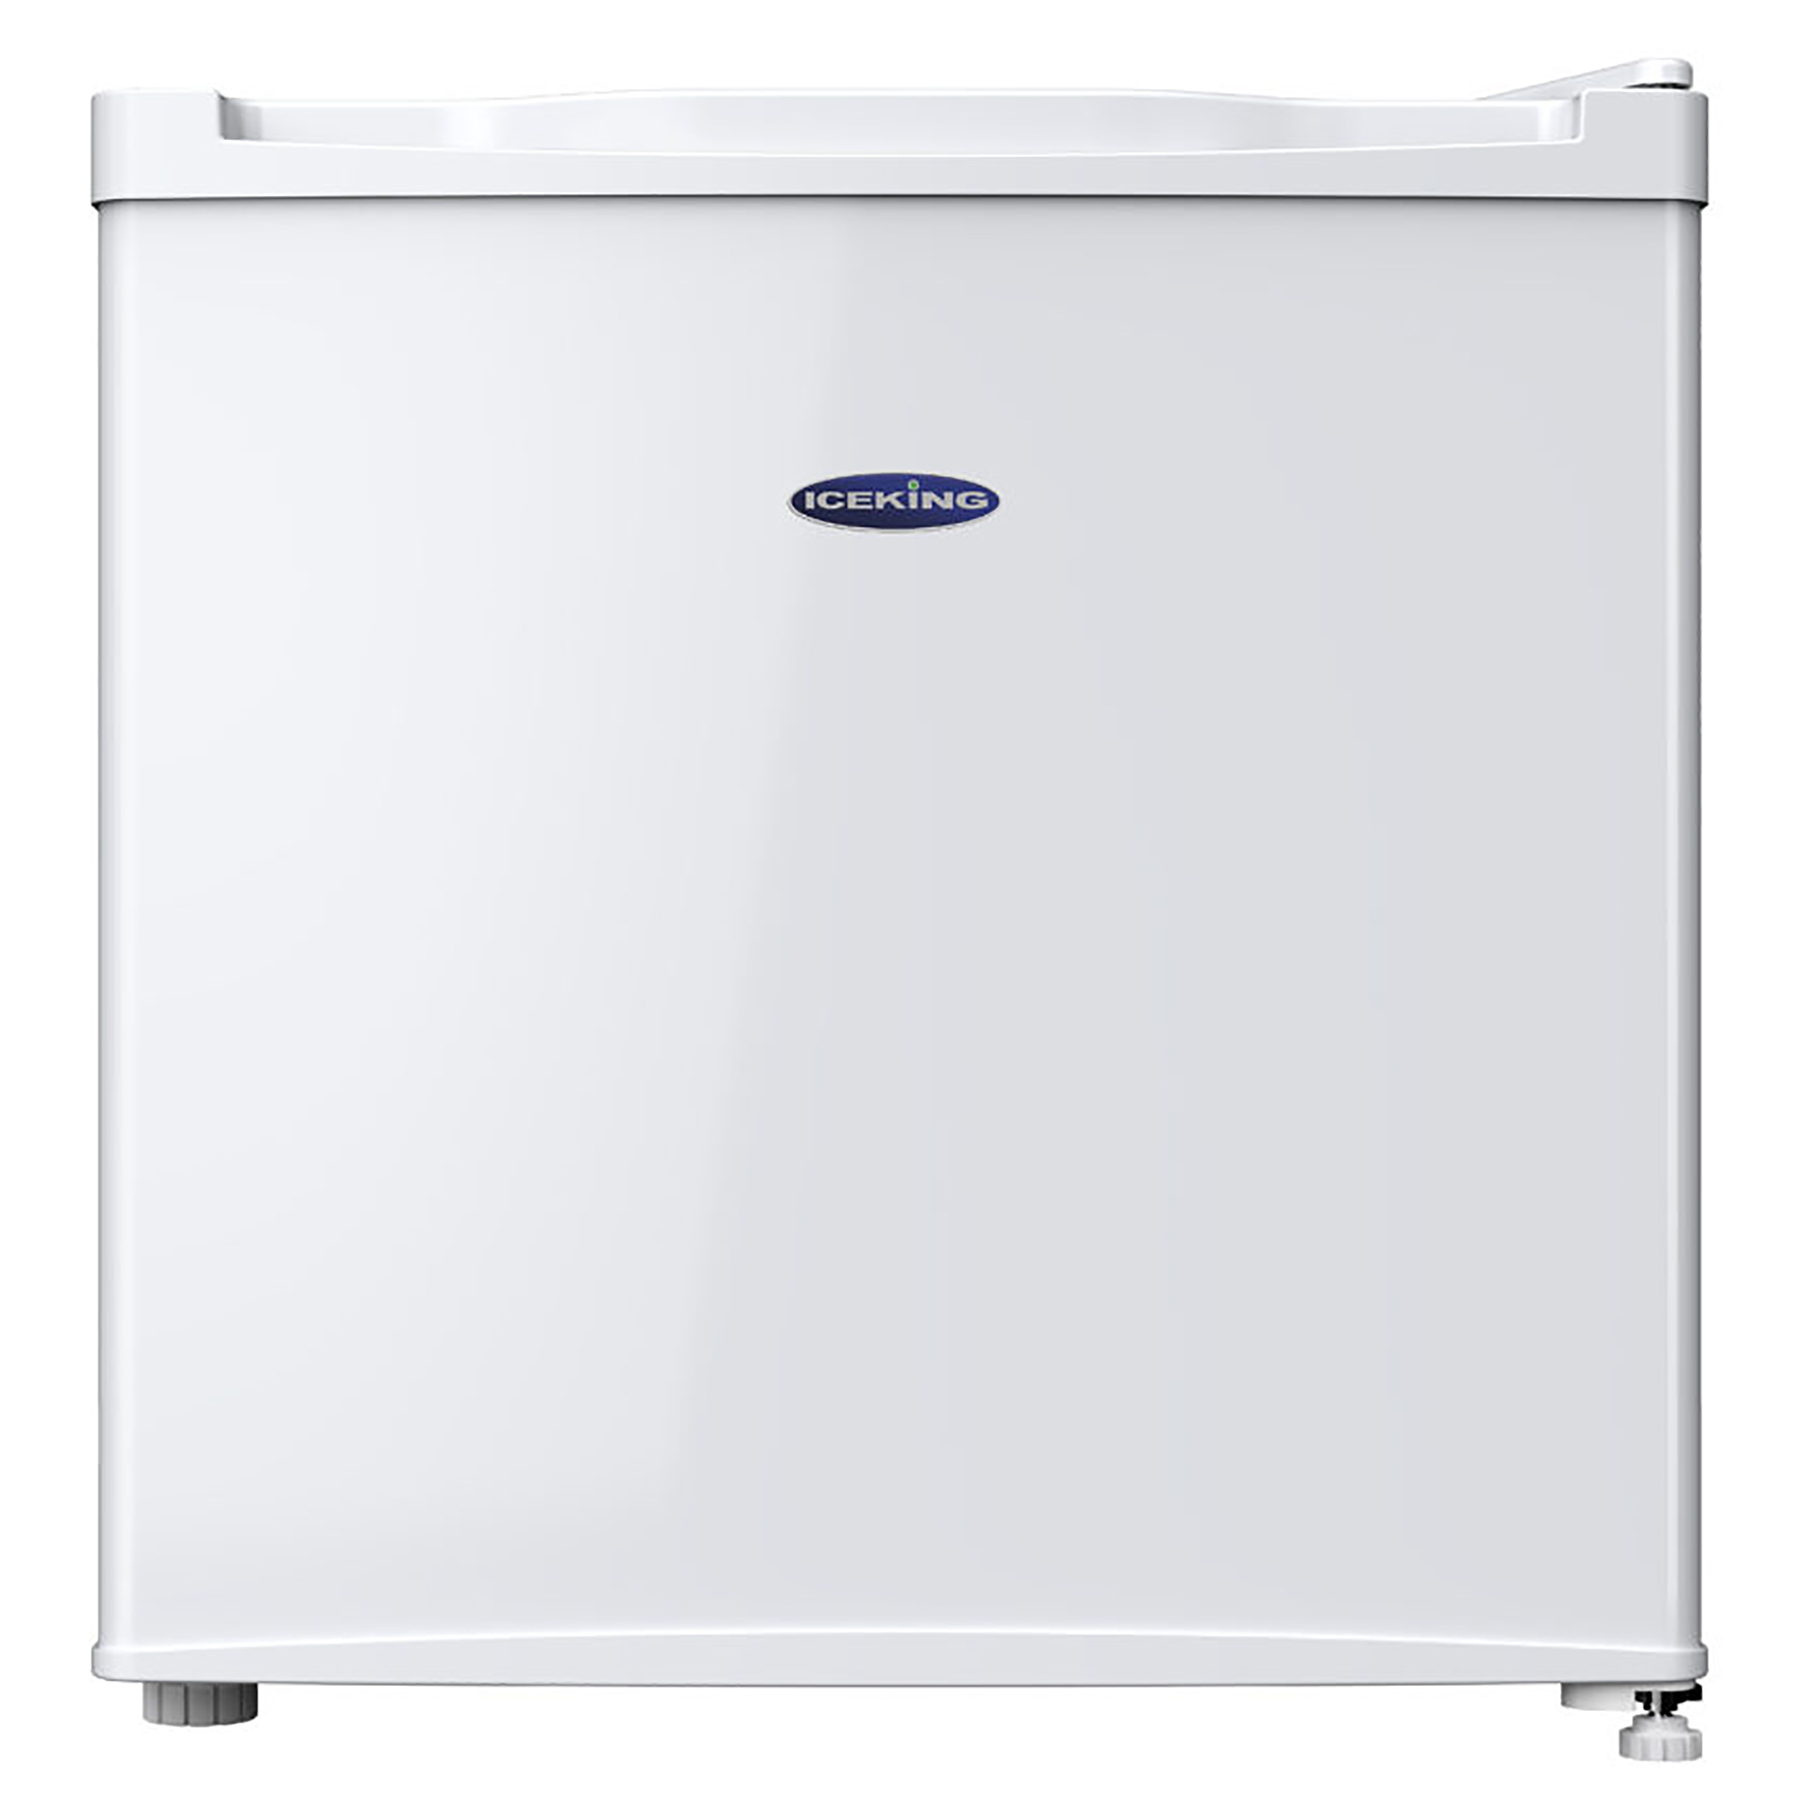 Photos - Freezer Iceking TF41W E 48cm Tabletop  in White 0 52m TF41W.E 